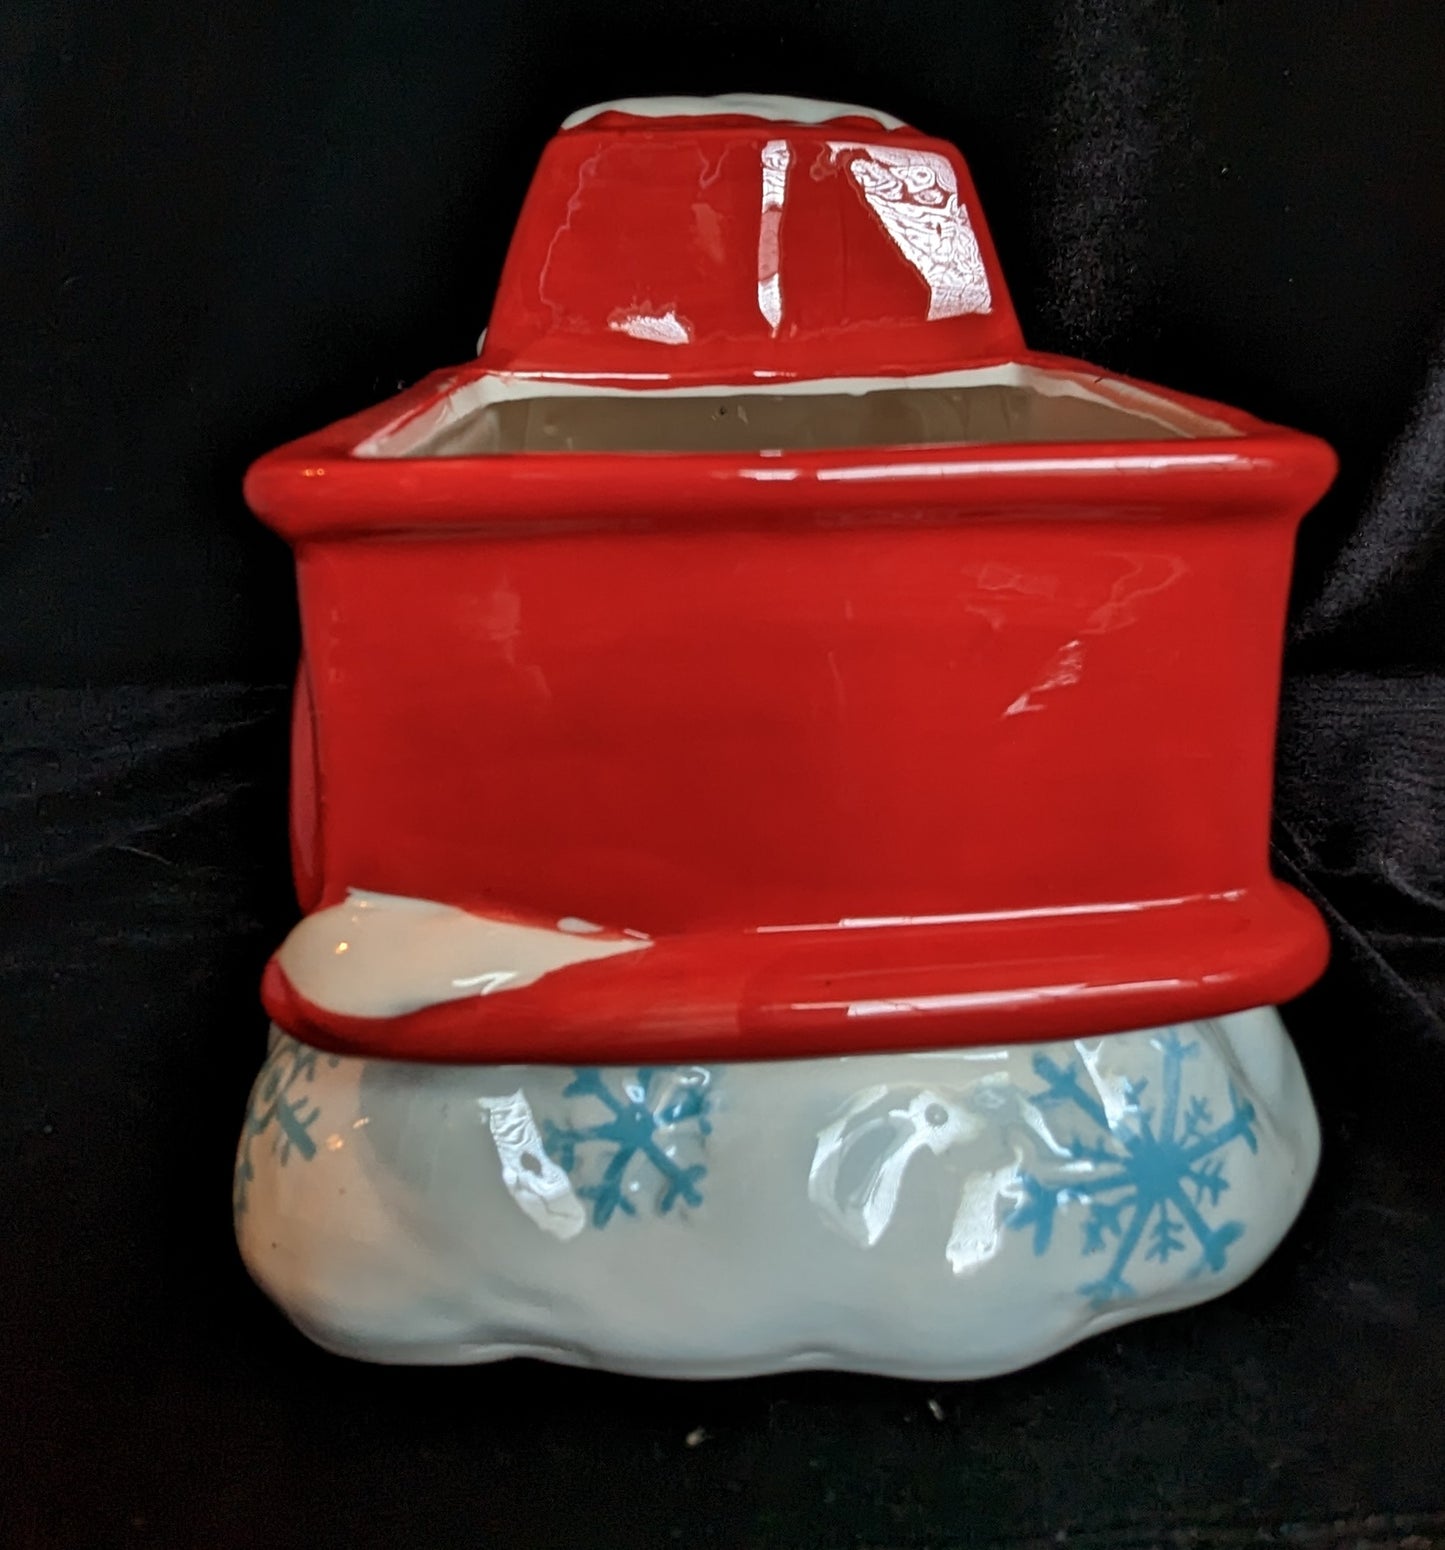 Earthenware, Antique Look, Red Truck Cookie Jar